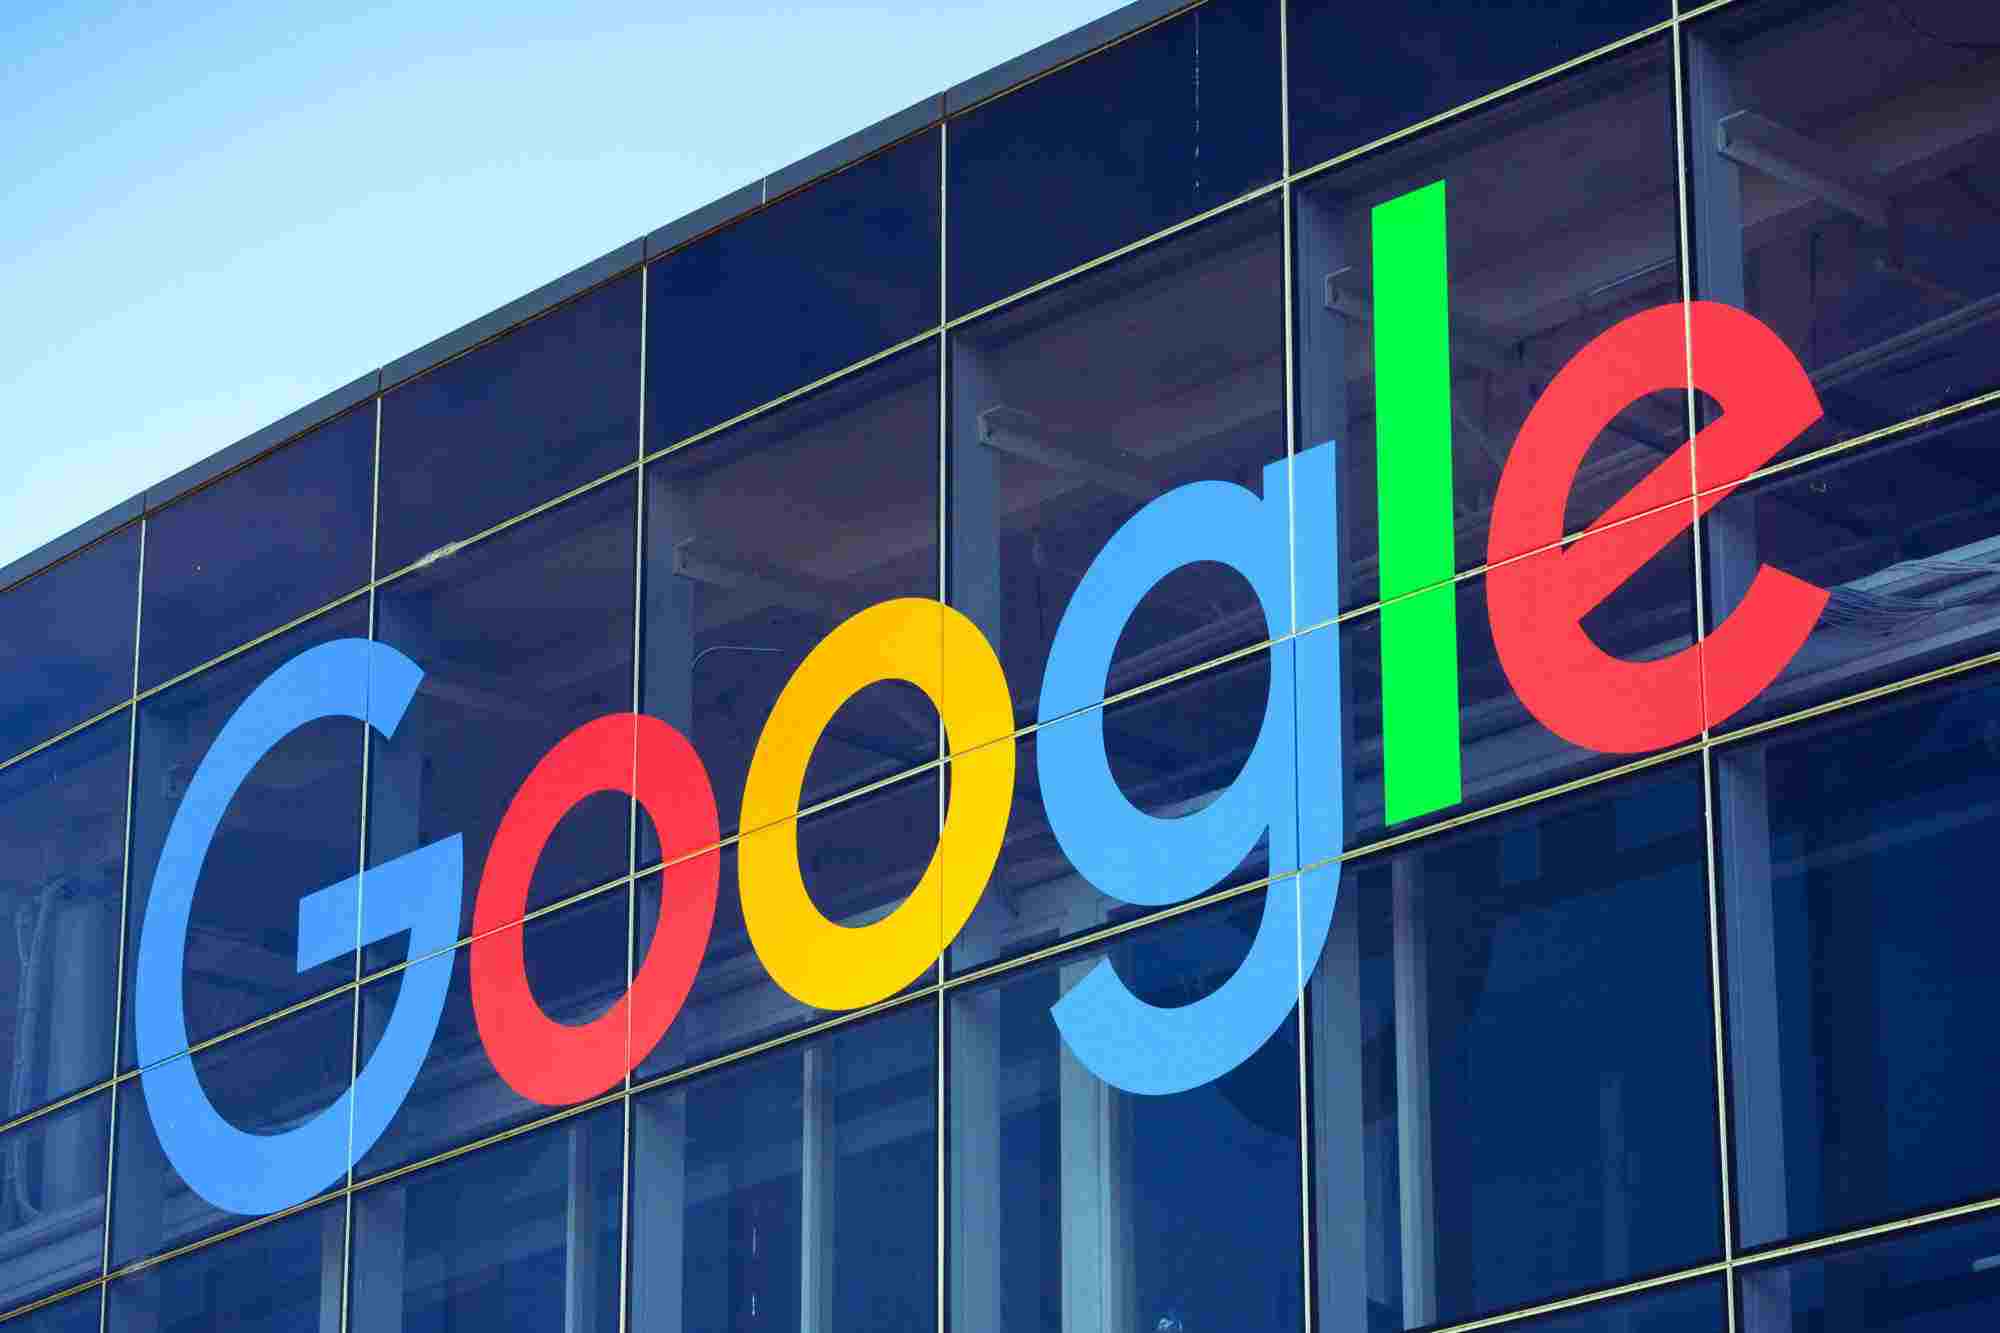 Google has announced more than 10,000 jobs